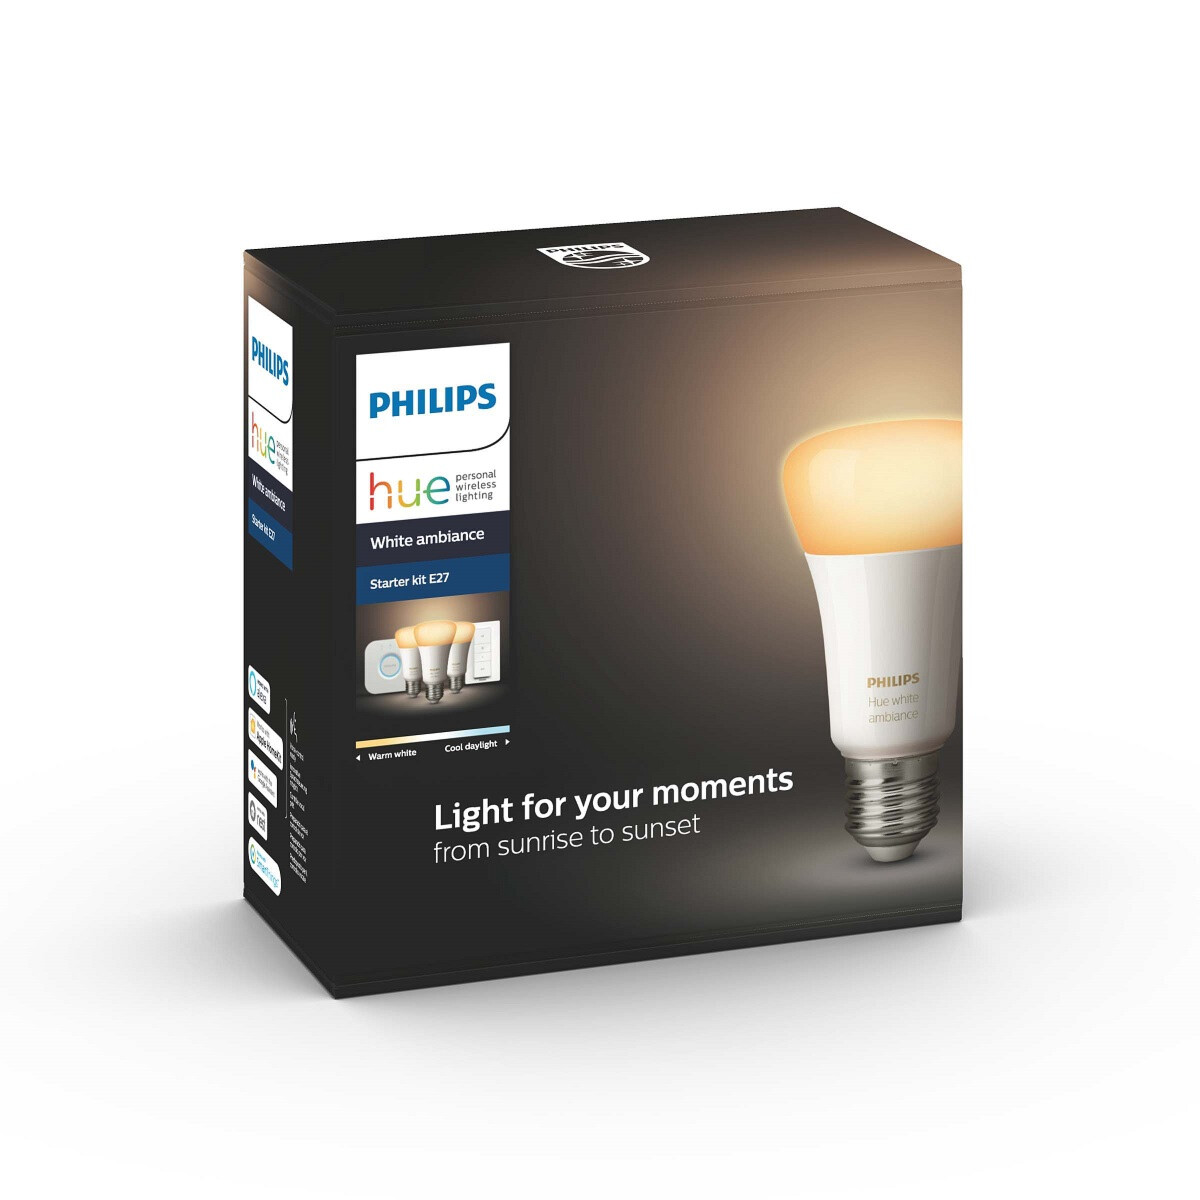 Uusia jännittäviä ominaisuuksia sisältävät nykyaikaiset LED-lamput